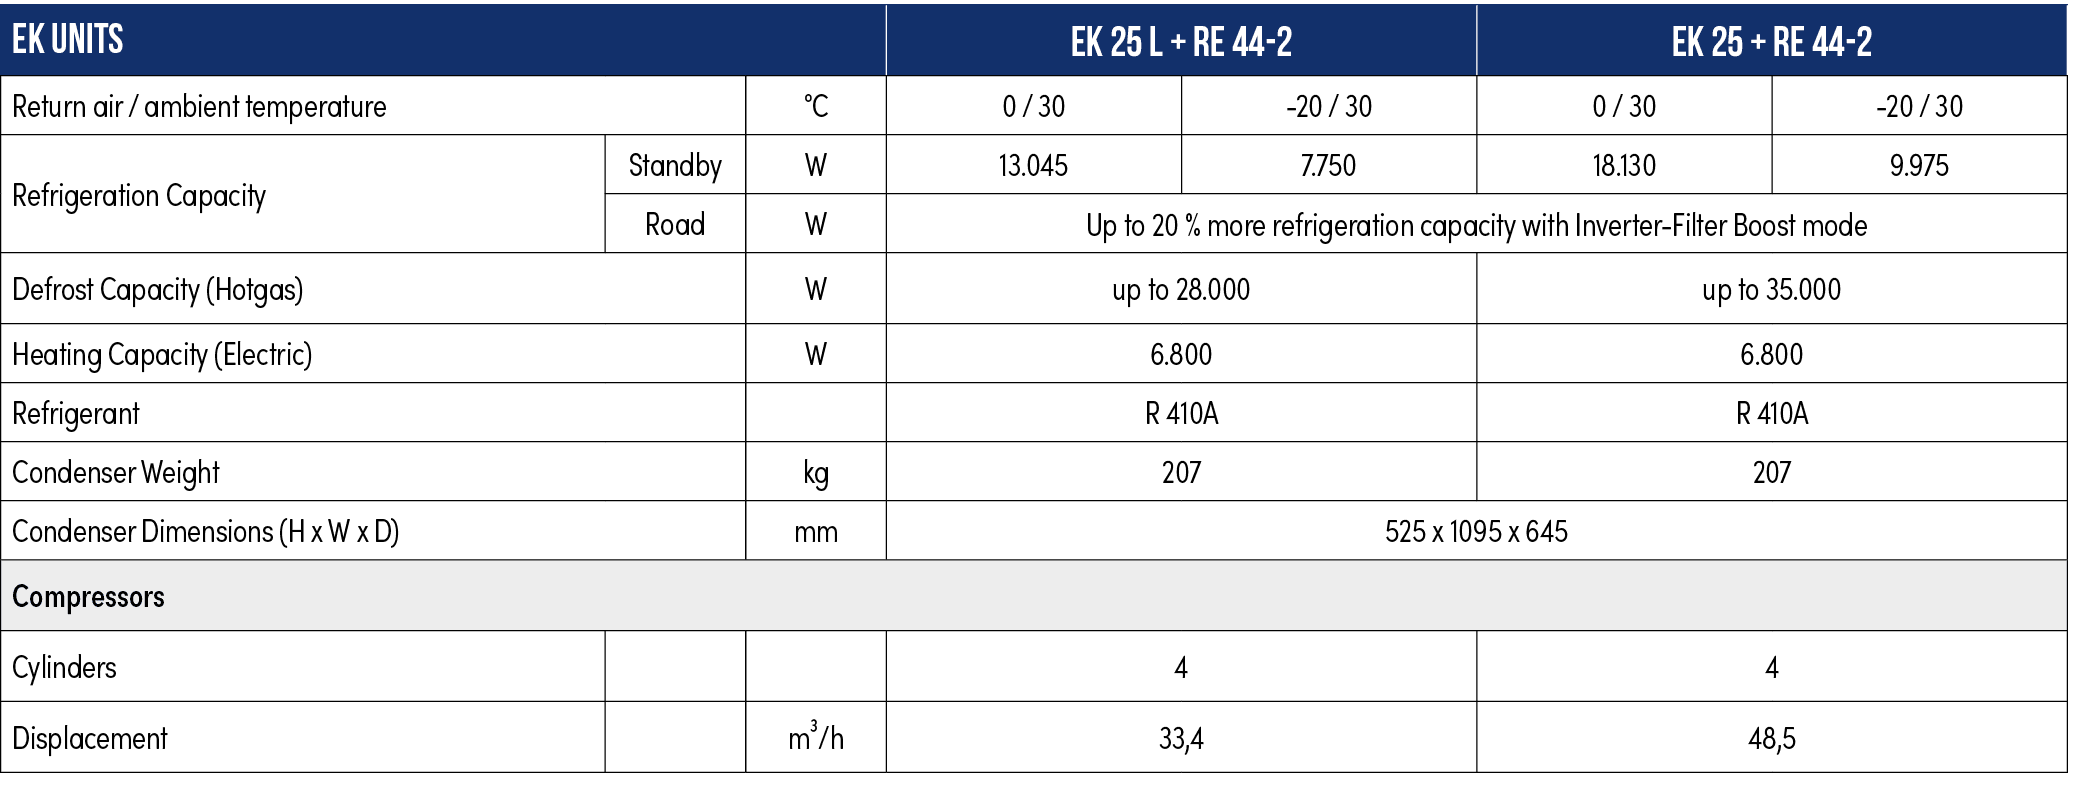 EK units,EK 25 L + RE 44-2,EK 25 + RE 44-2,Return air / ambient temperature,°C,0 / 30 ,-20 / 30,0 / 30 ,-20 / 30,Refr...